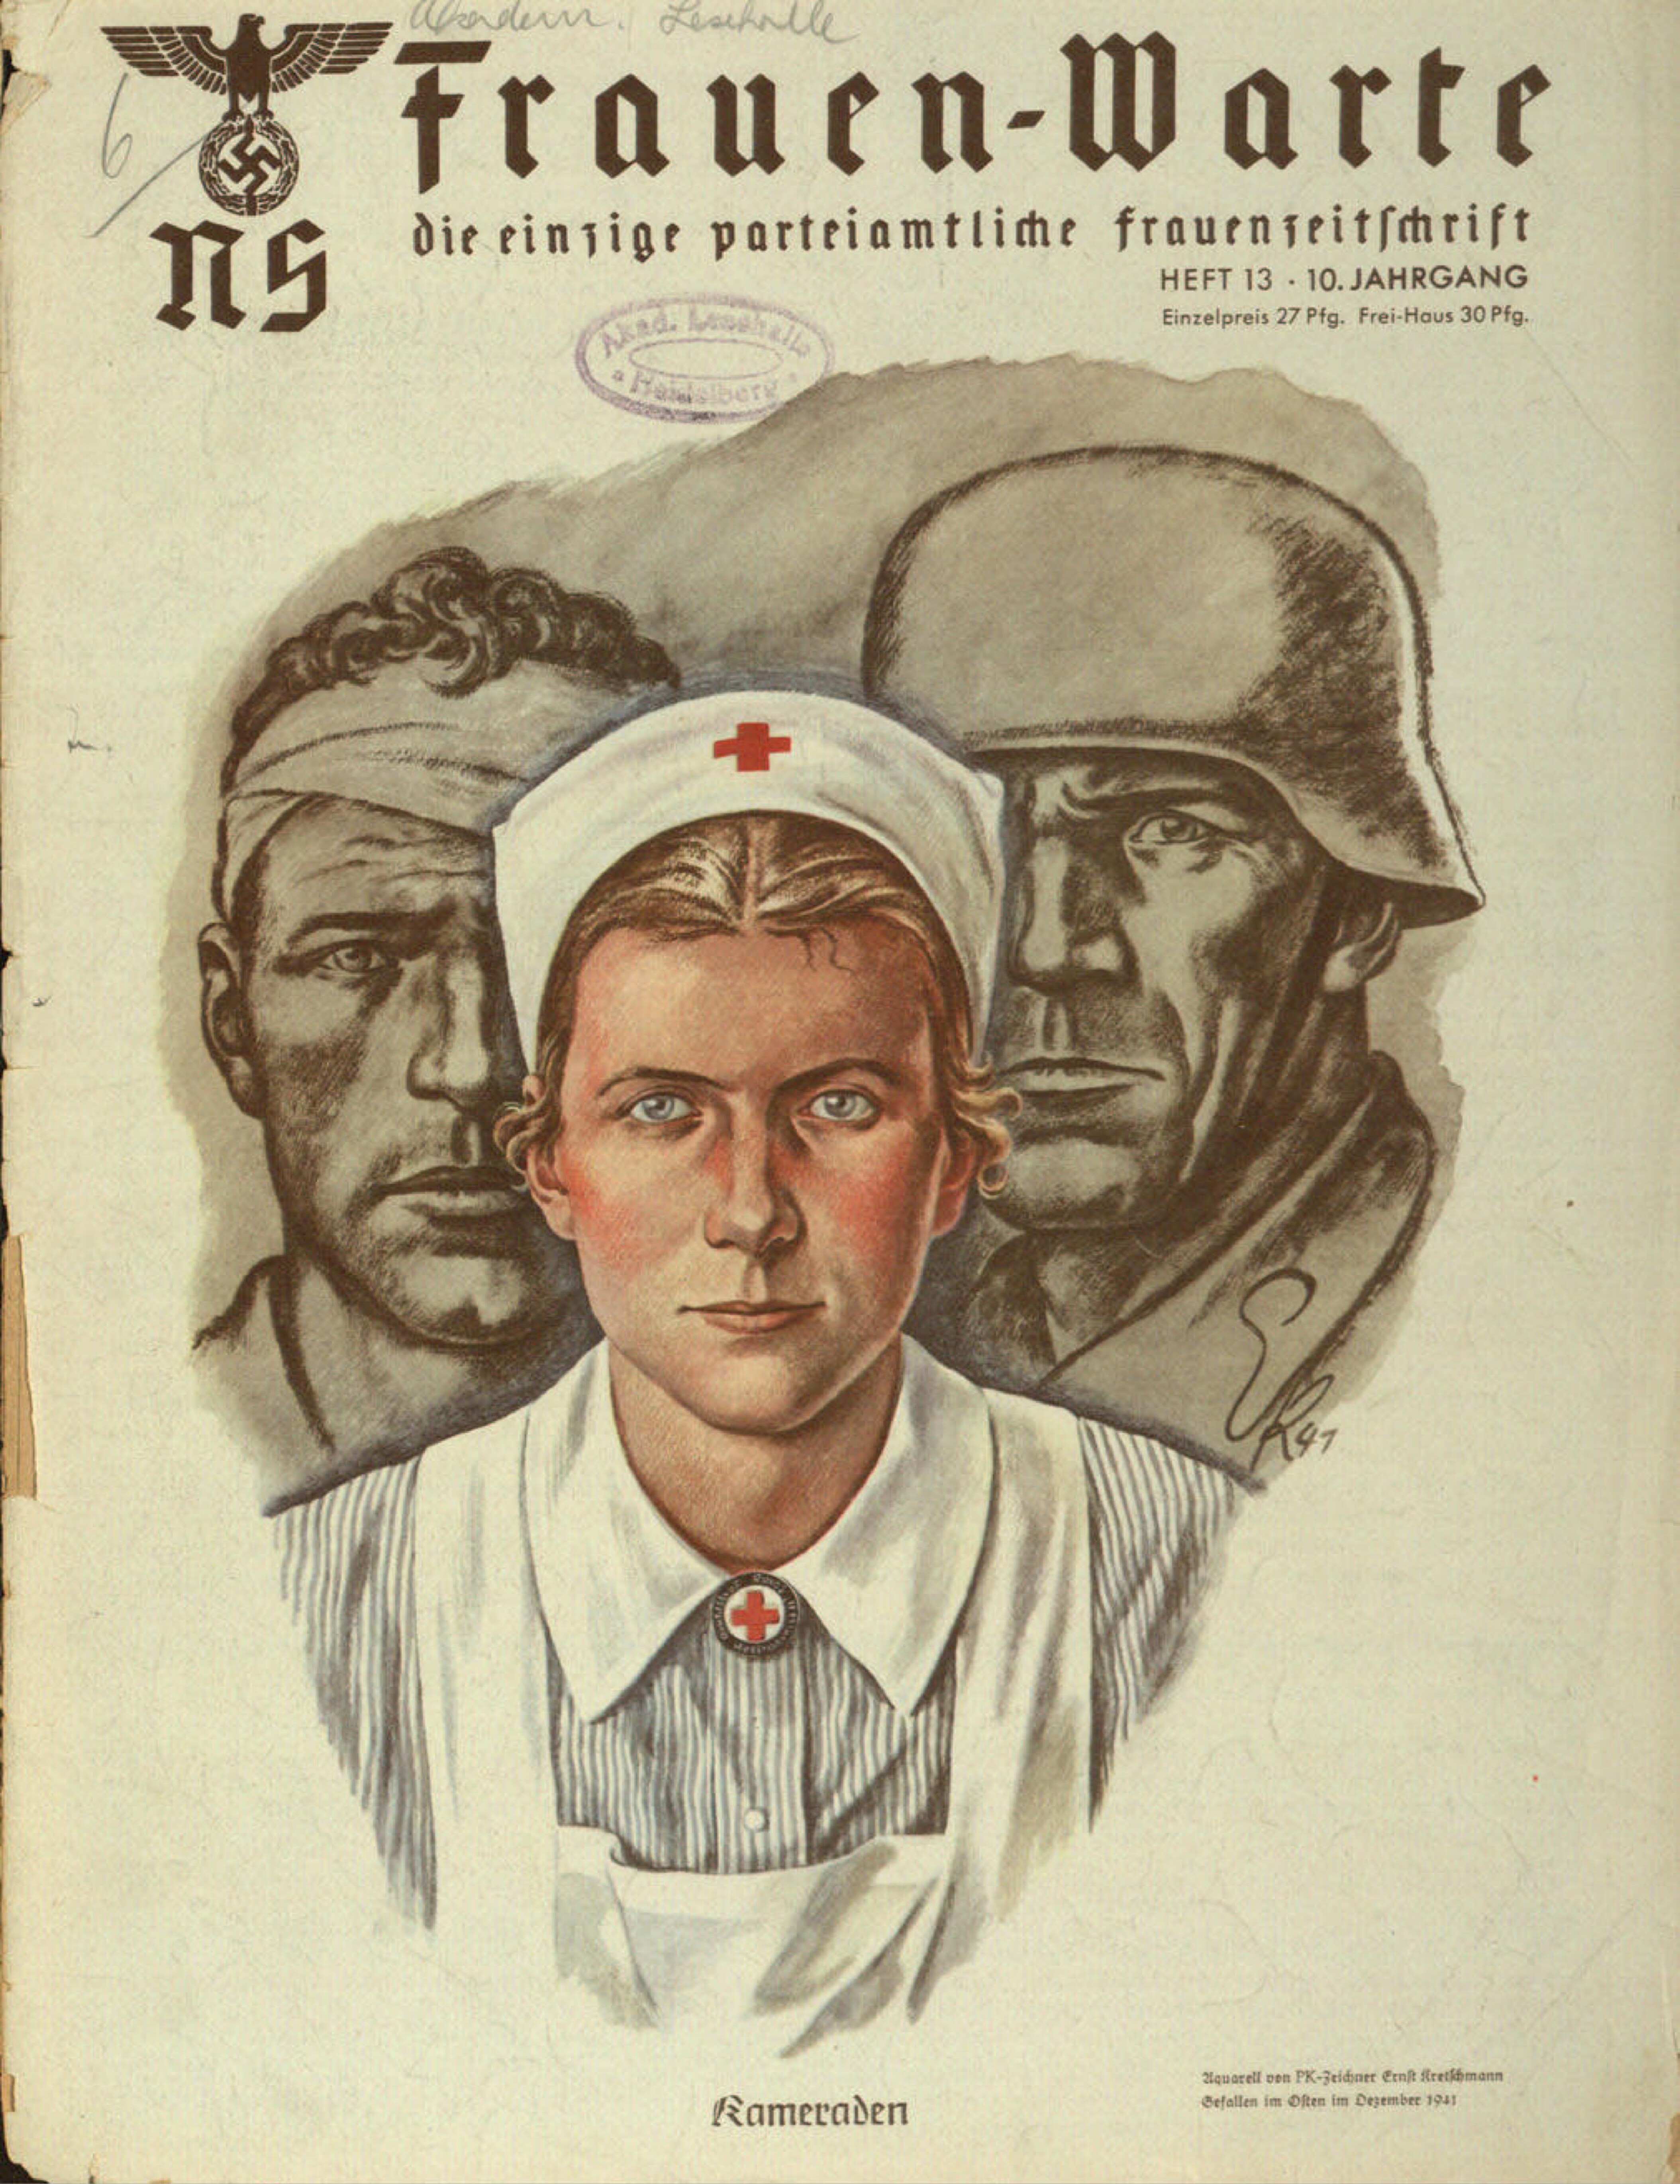 Frauen-Warte 10. Jahrgang Heft 13 (1942, 20 S., Scan, Fraktur)